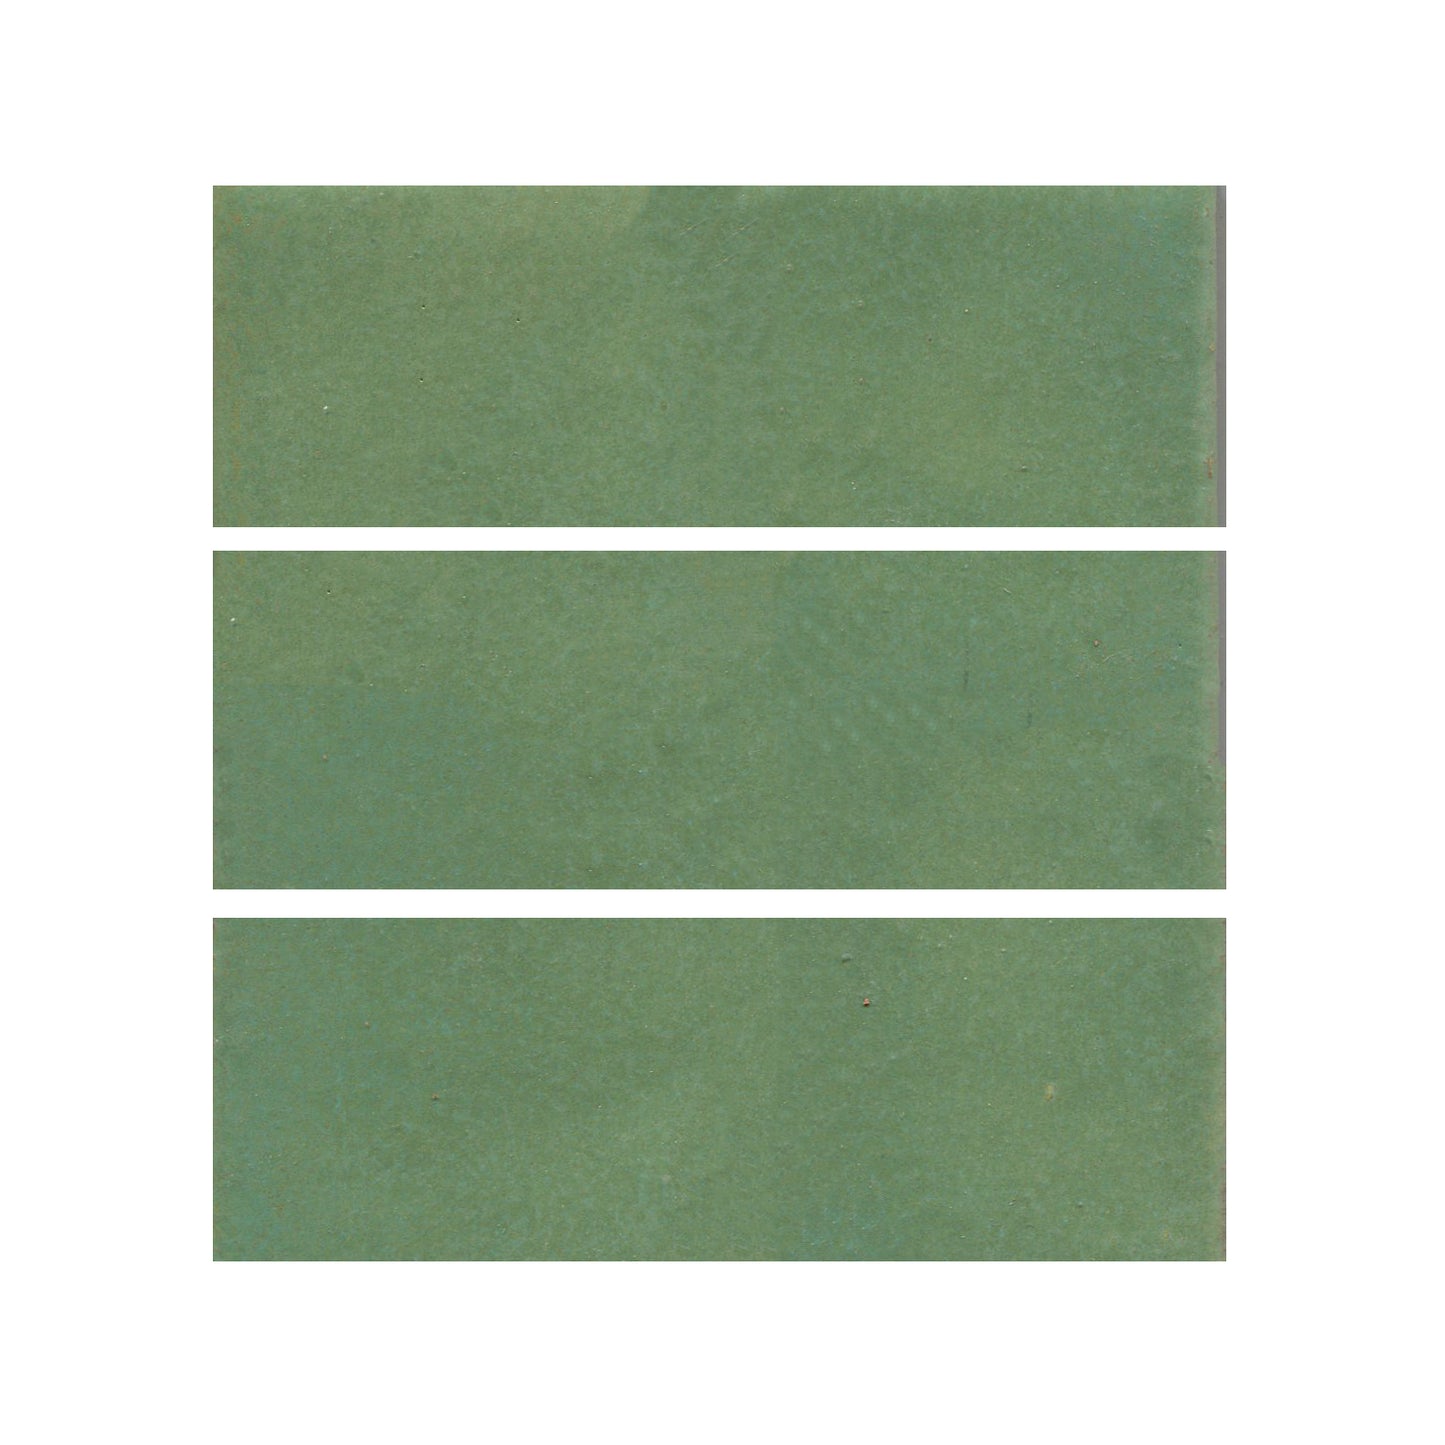 Wasabi green 3x6 field tile